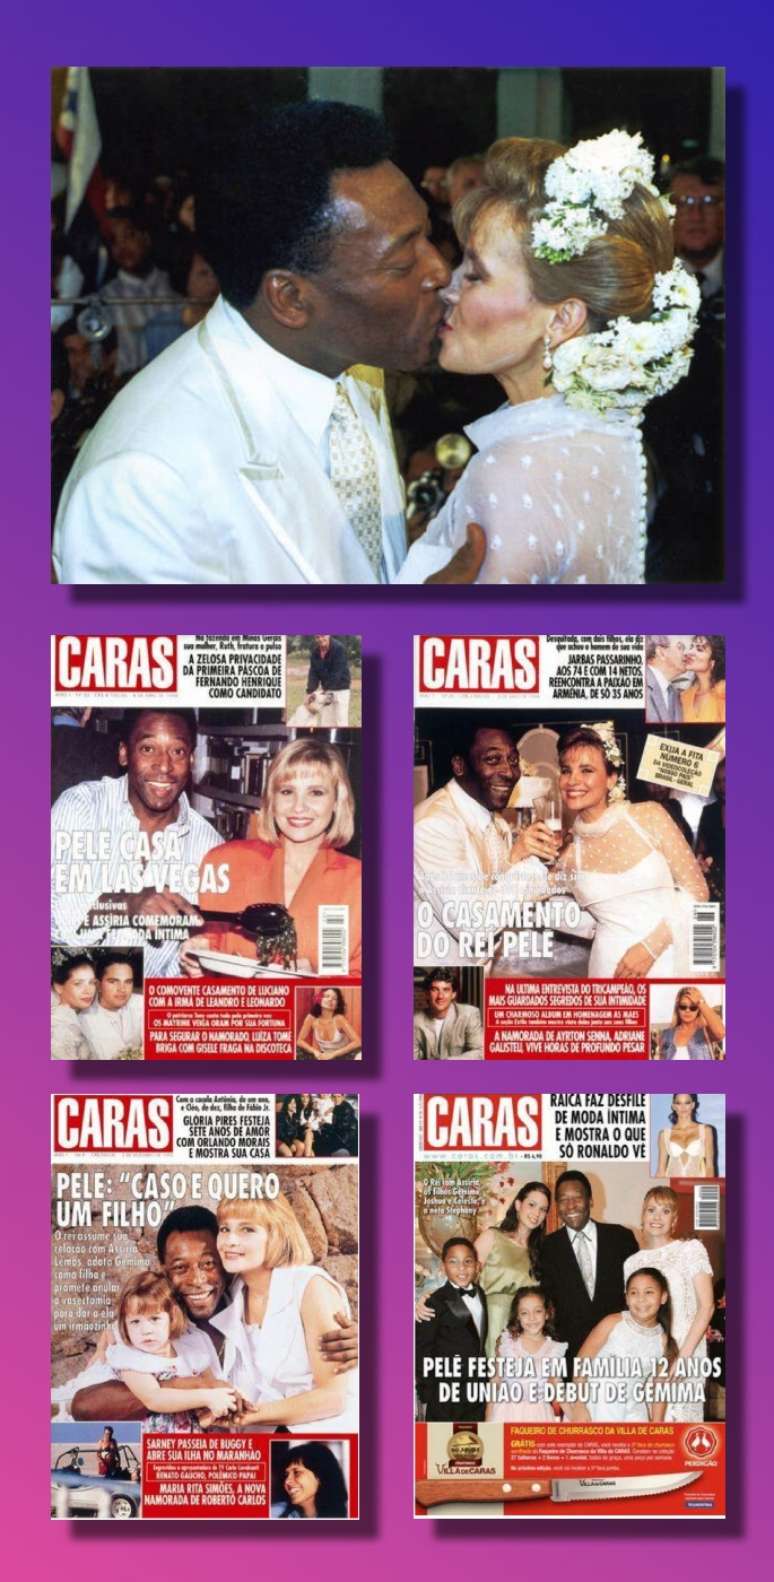 Houve um casamento em Las Vegas e uma cerimônia no Recife (foto); a história de amor foi contada pelas revistas sobre famosos